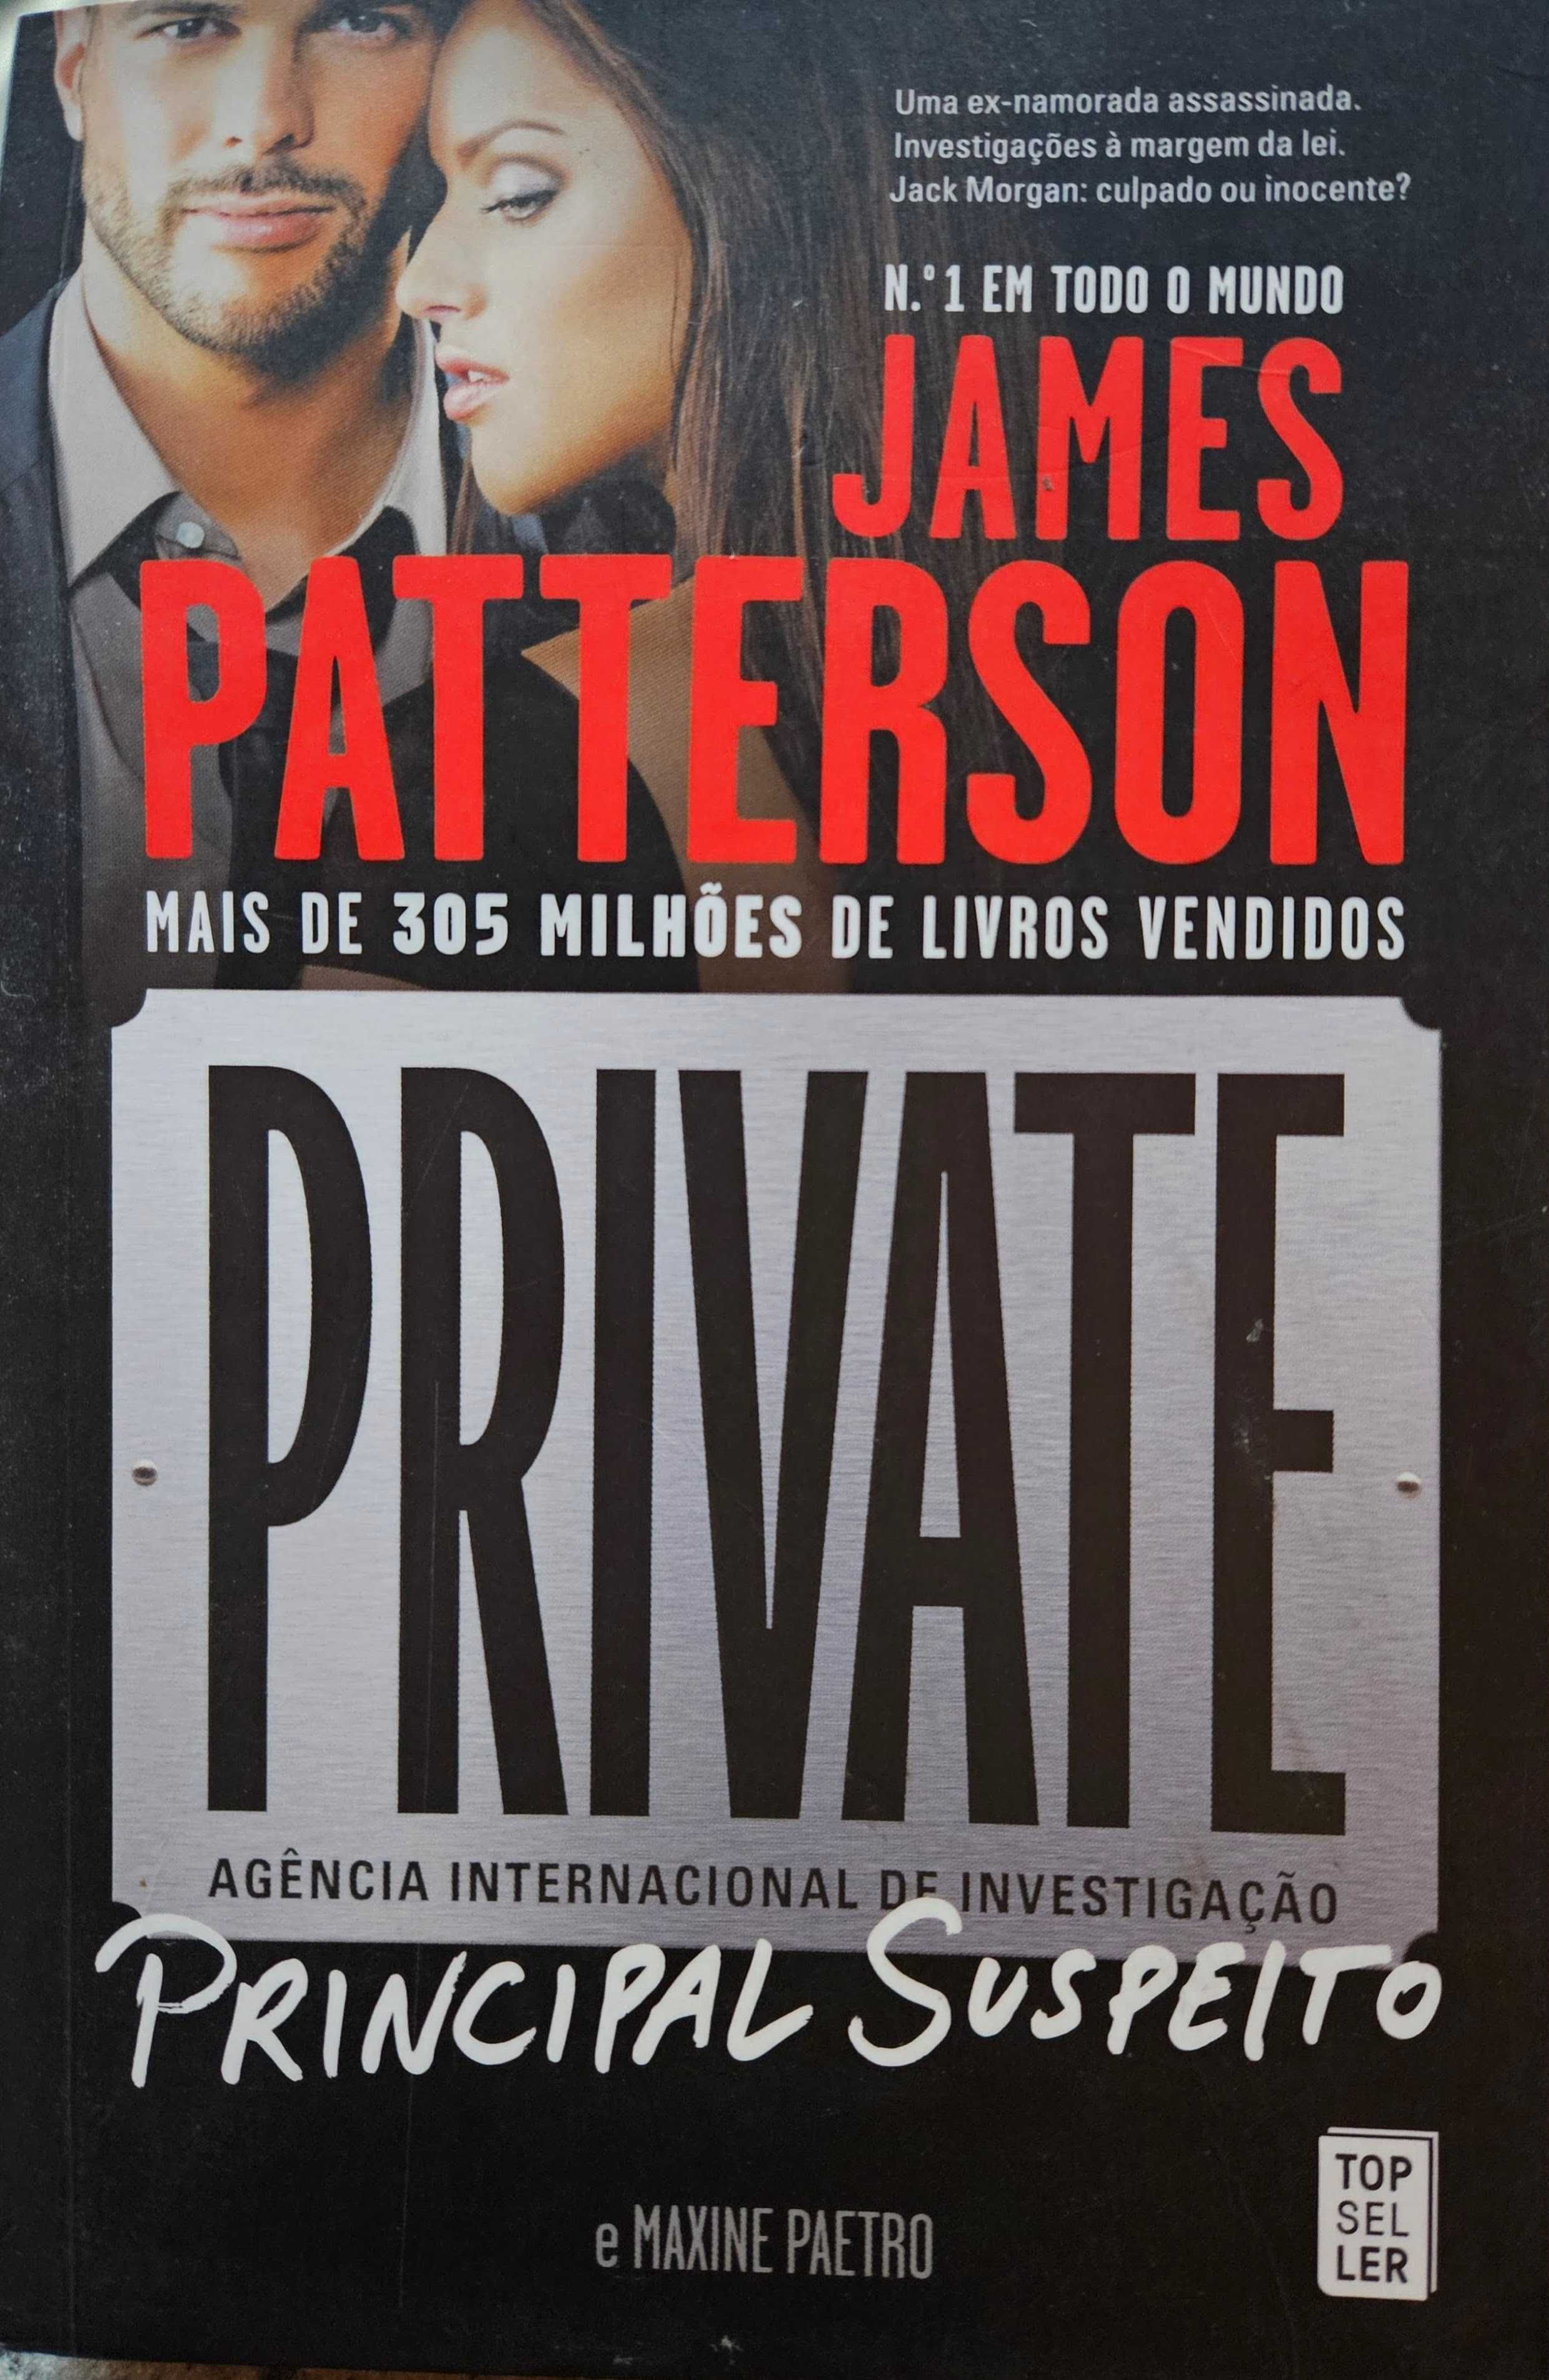 James Patterson - Private: Principal Suspeito